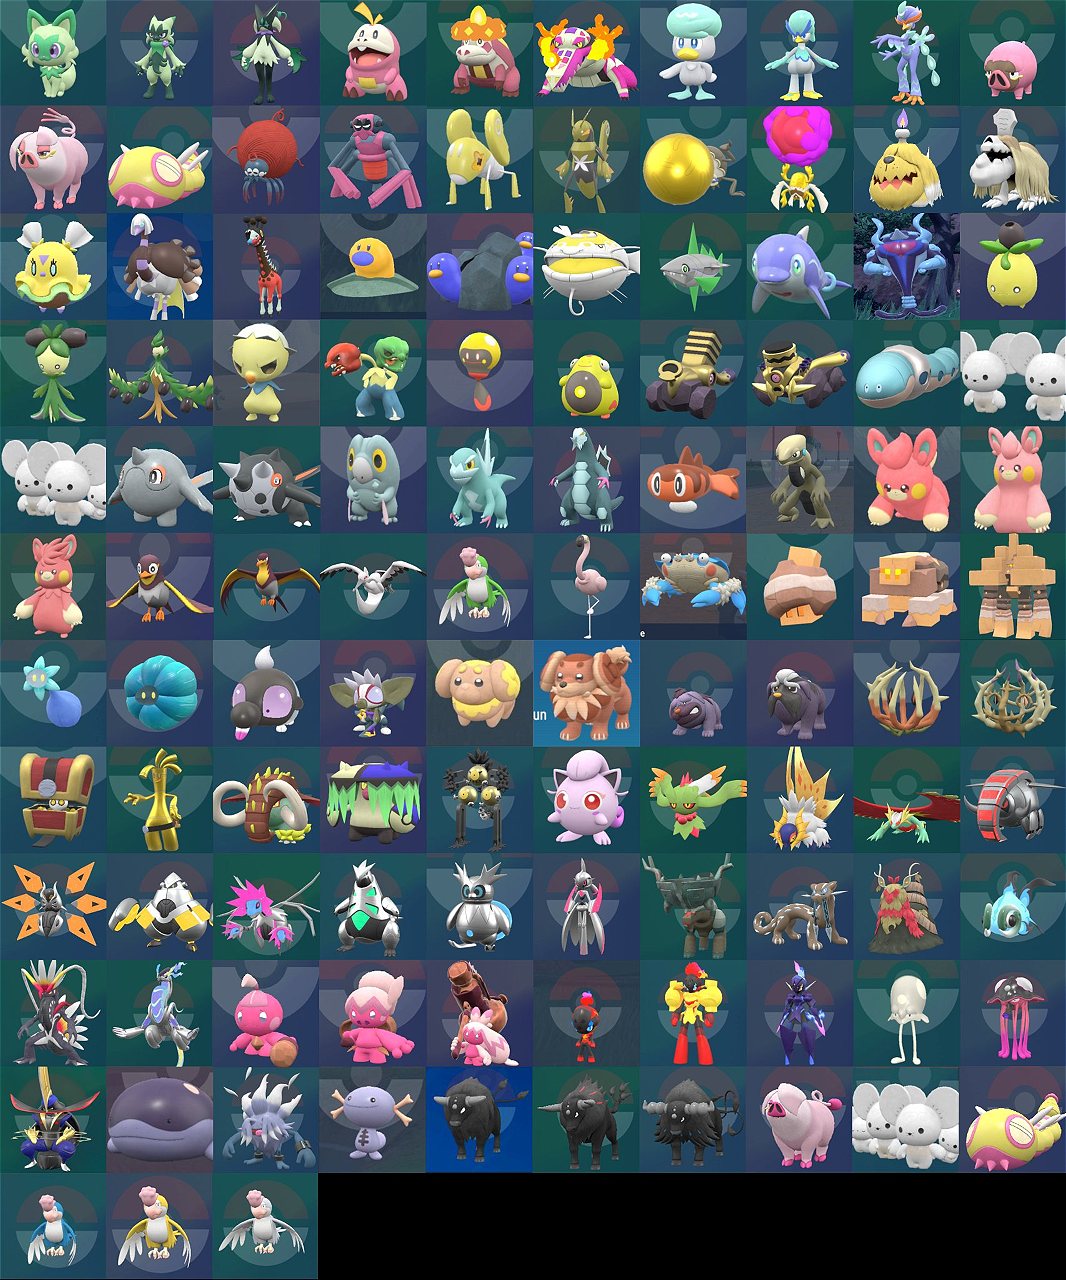 Pokémon Escarlata y Pokémon Púrpura, Estos son todos los Pokémon Shiny